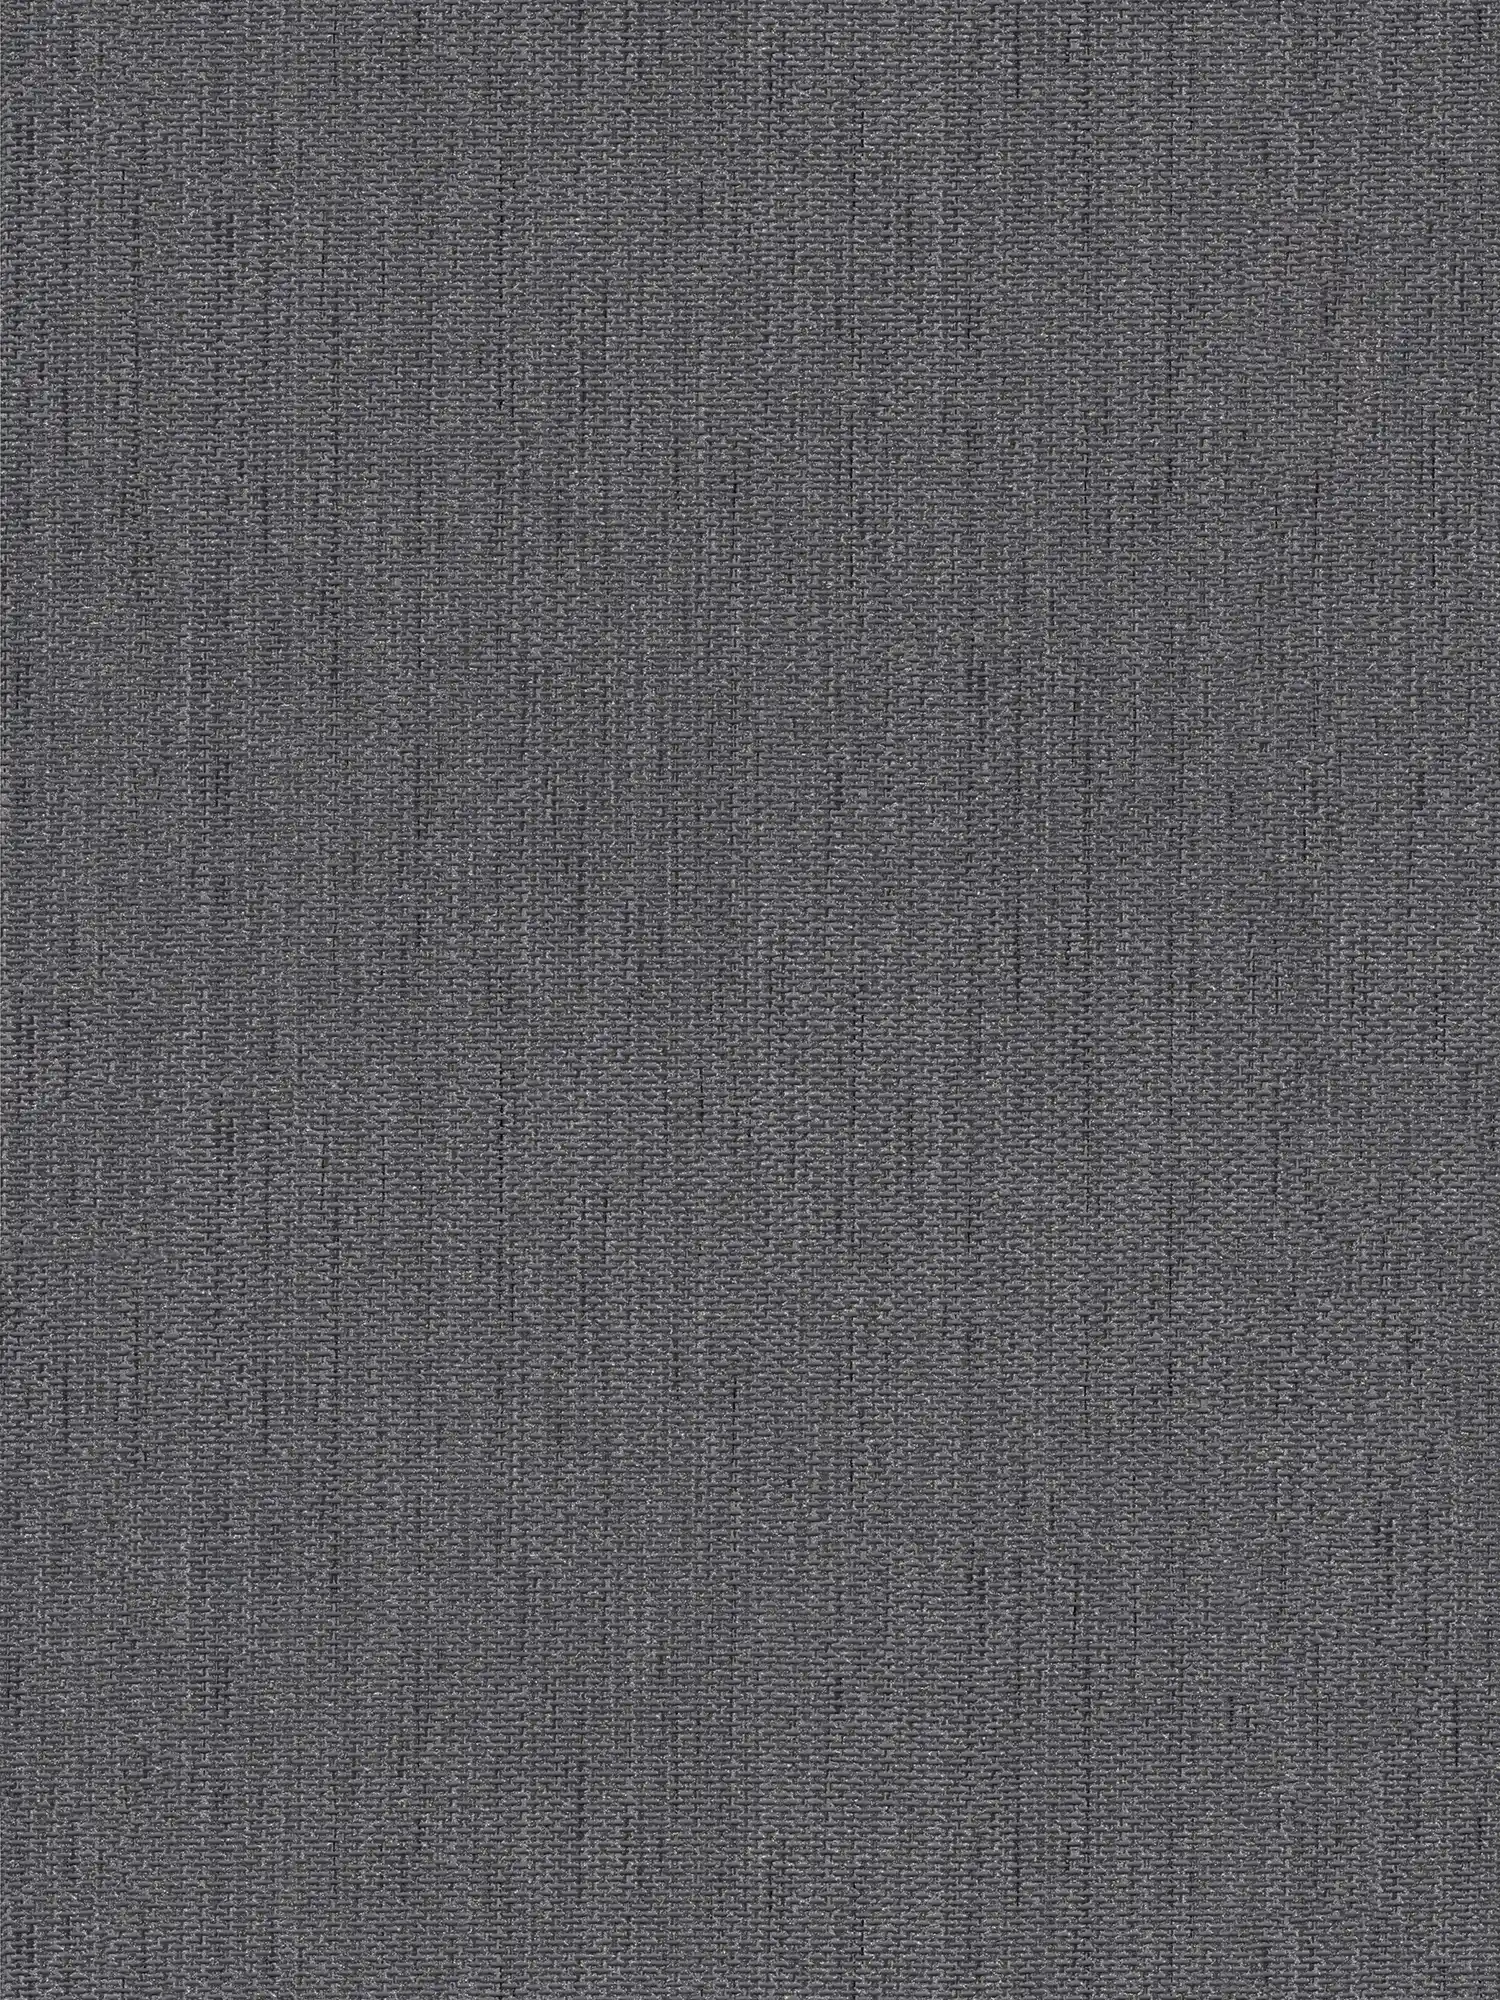 Linnenachtig behang met textielstructuur - grijs, zwart
